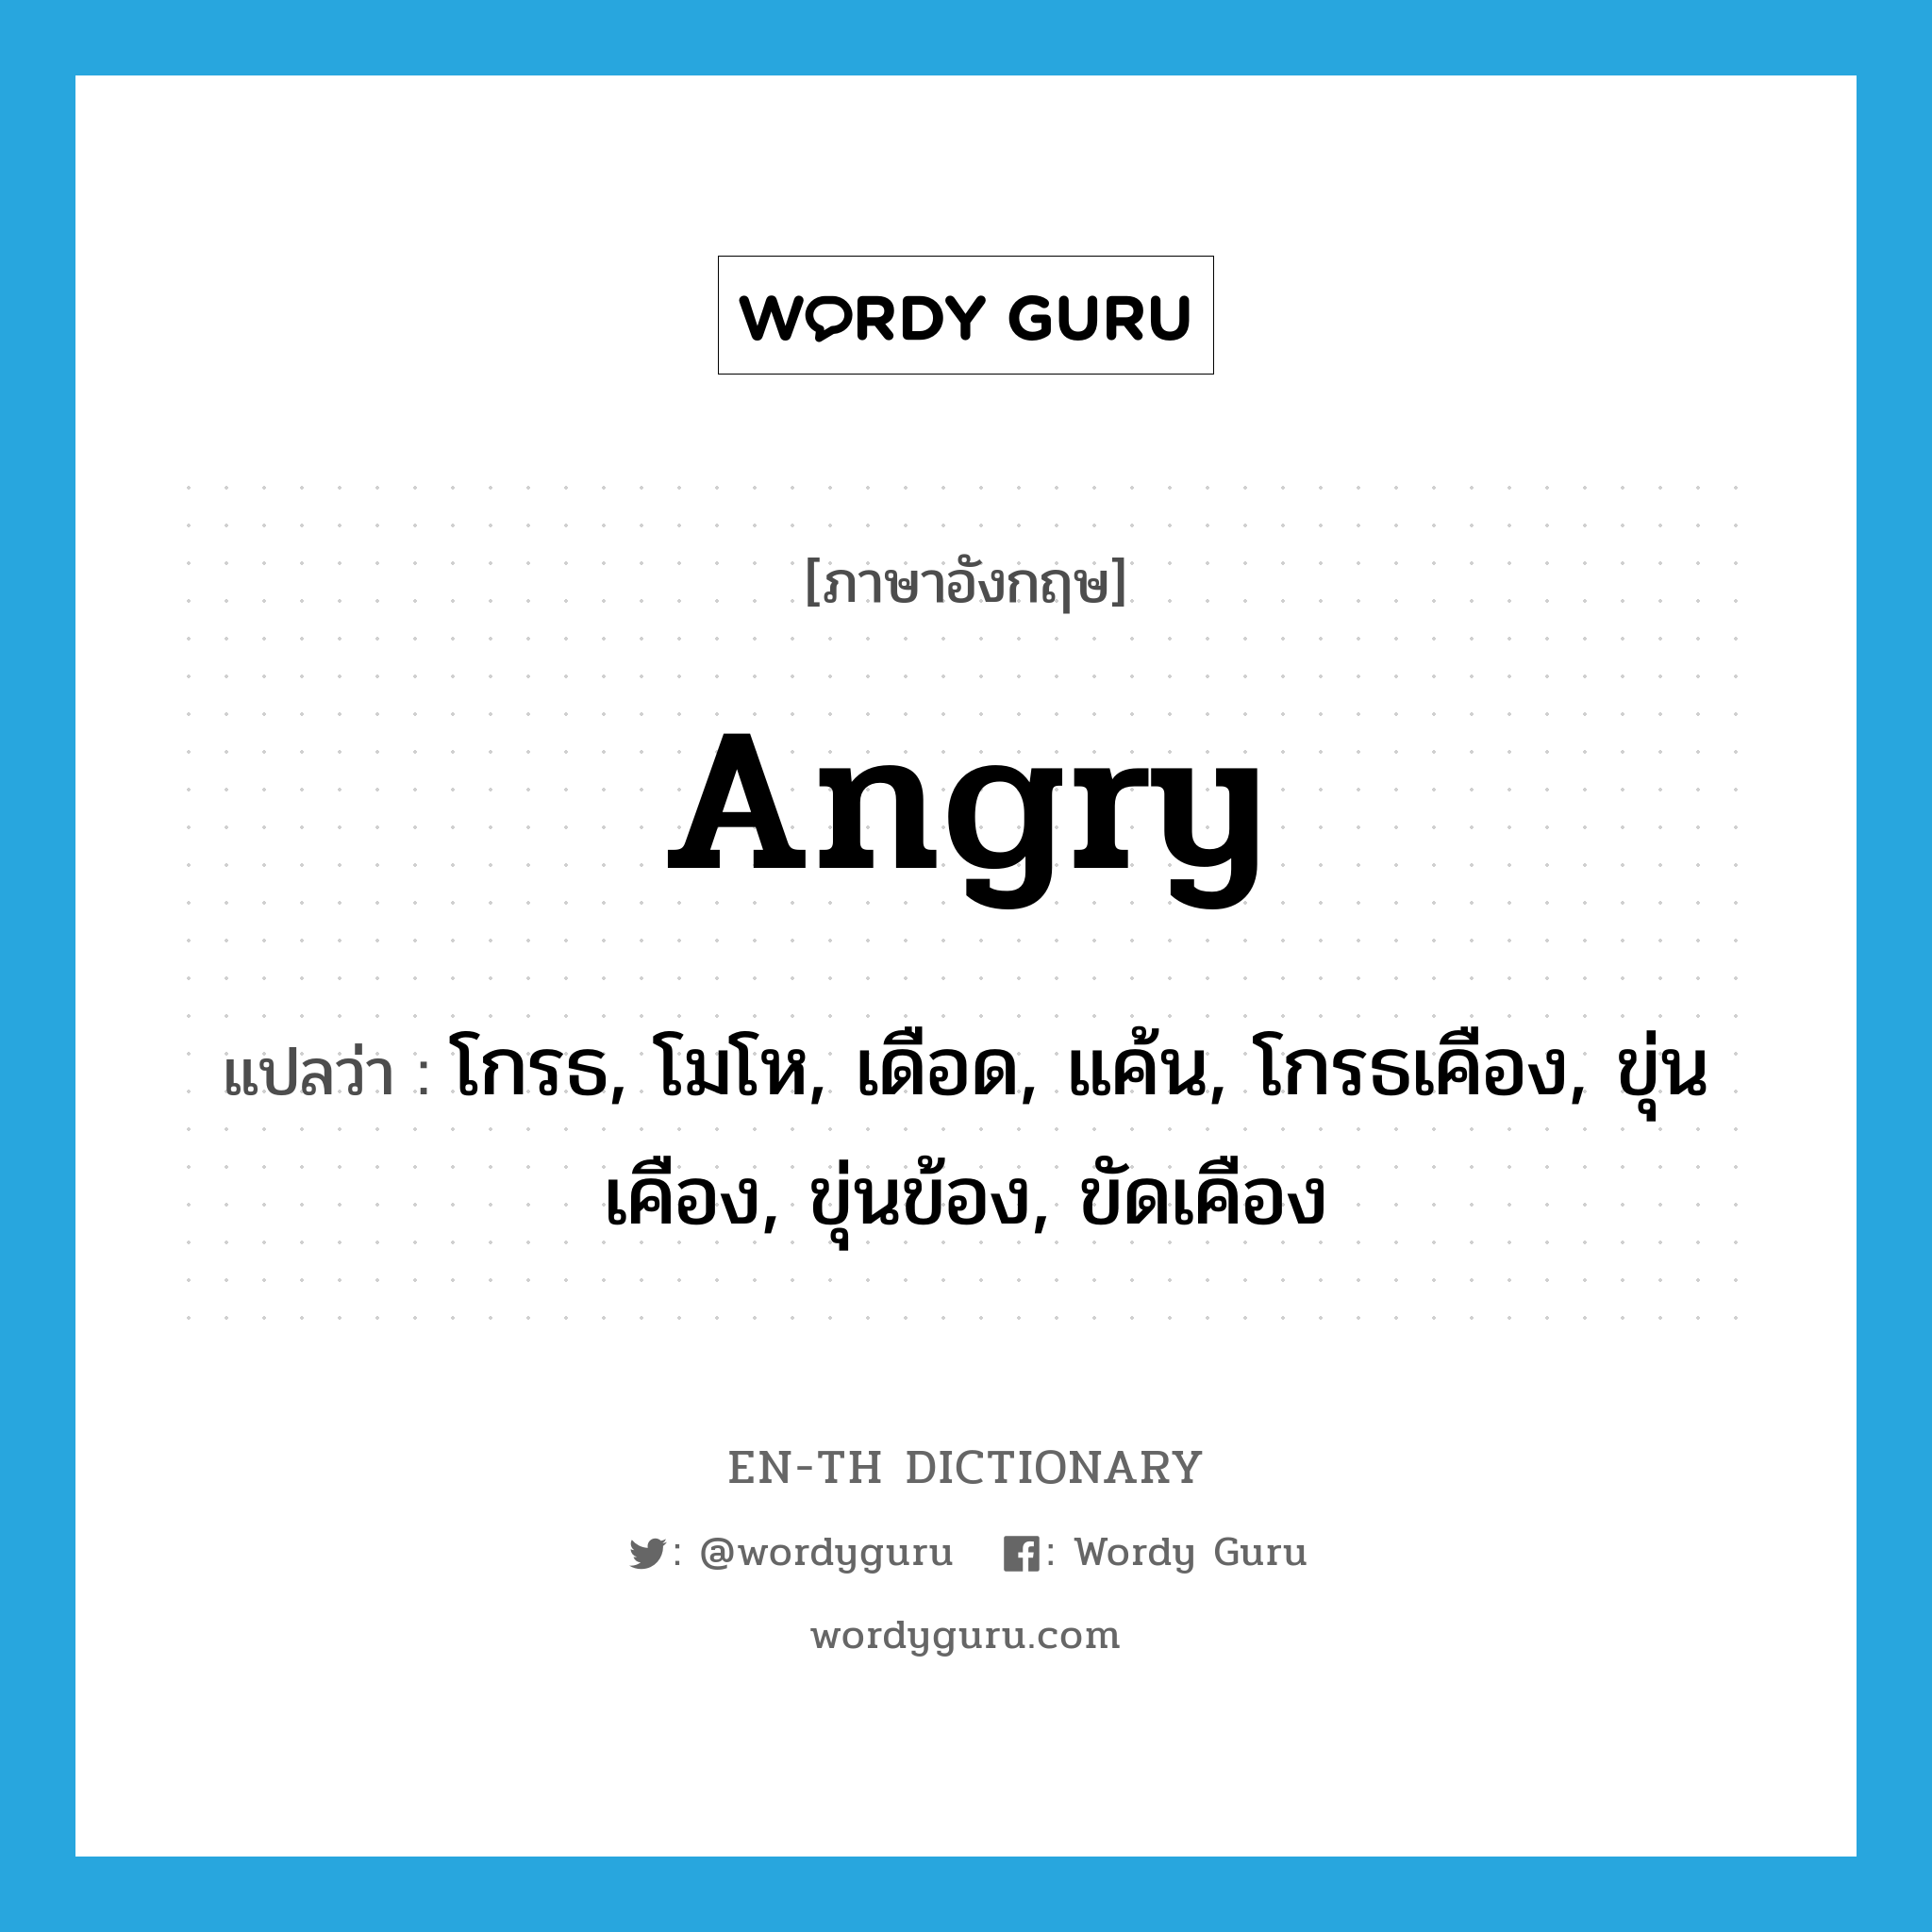 โกรธ, โมโห, เดือด, แค้น, โกรธเคือง, ขุ่นเคือง, ขุ่นข้อง, ขัดเคือง ภาษาอังกฤษ?, คำศัพท์ภาษาอังกฤษ โกรธ, โมโห, เดือด, แค้น, โกรธเคือง, ขุ่นเคือง, ขุ่นข้อง, ขัดเคือง แปลว่า angry ประเภท ADJ หมวด ADJ